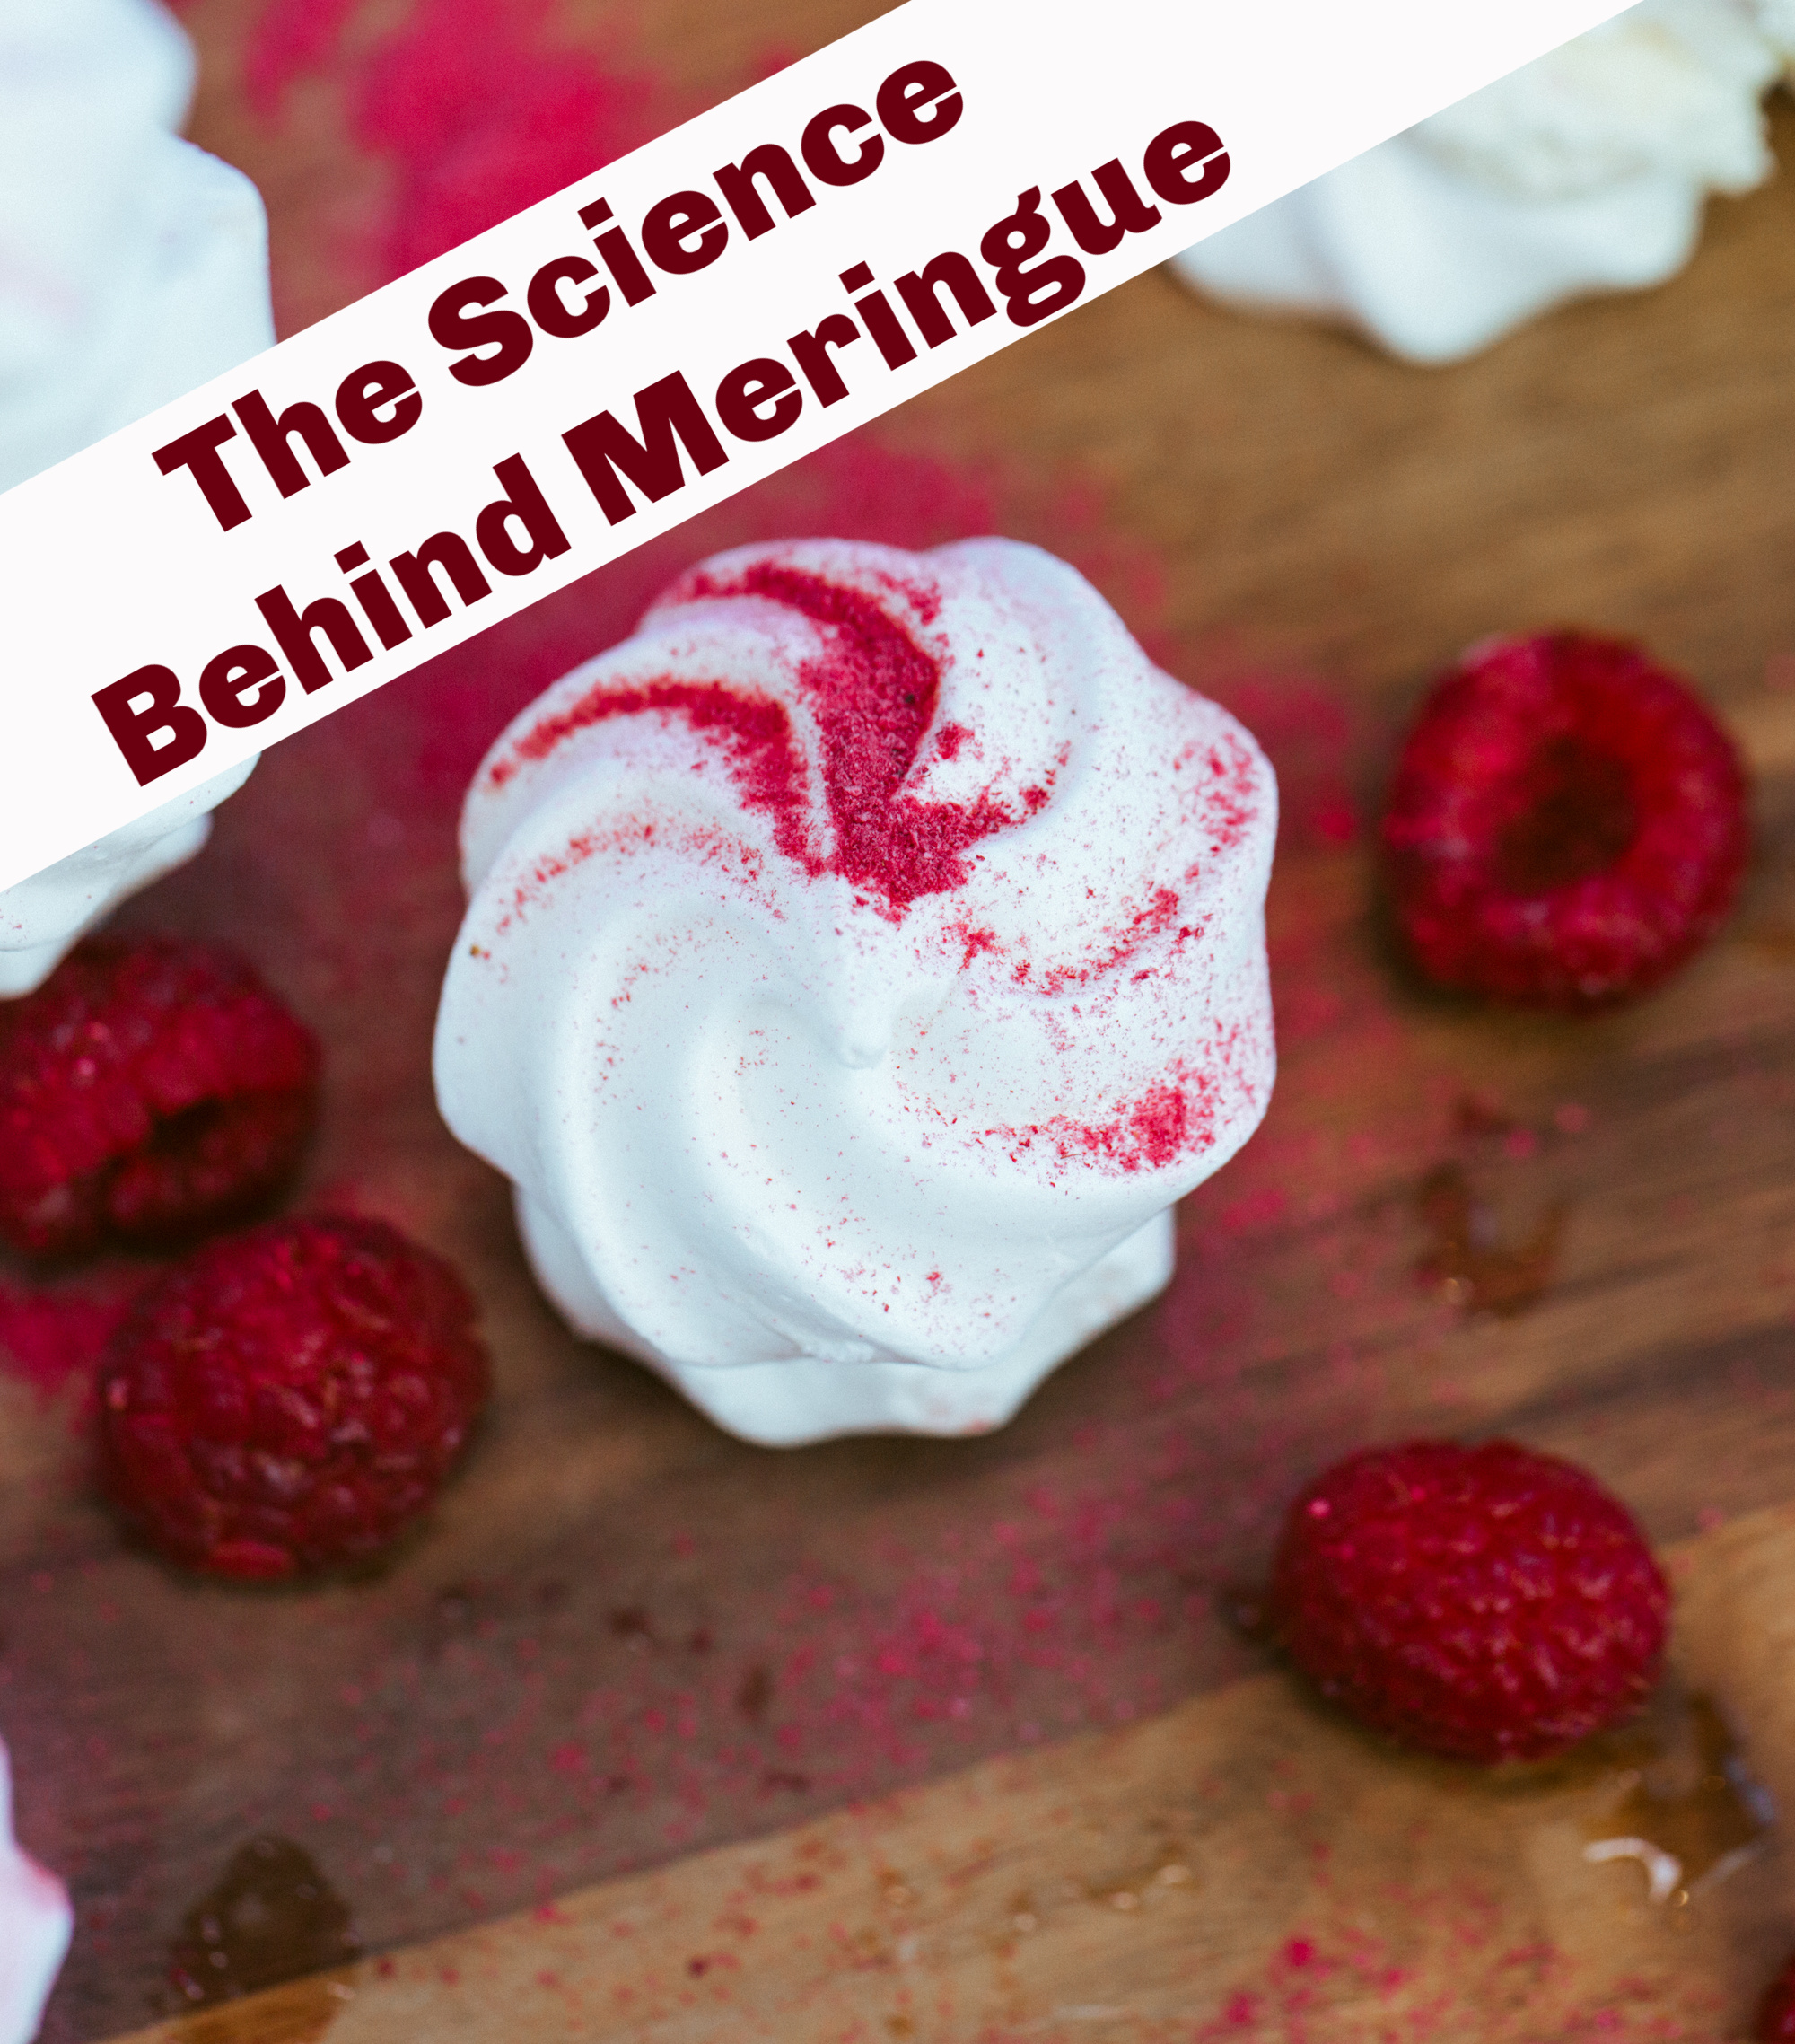 Meringue and raspberries - the science behind meringue